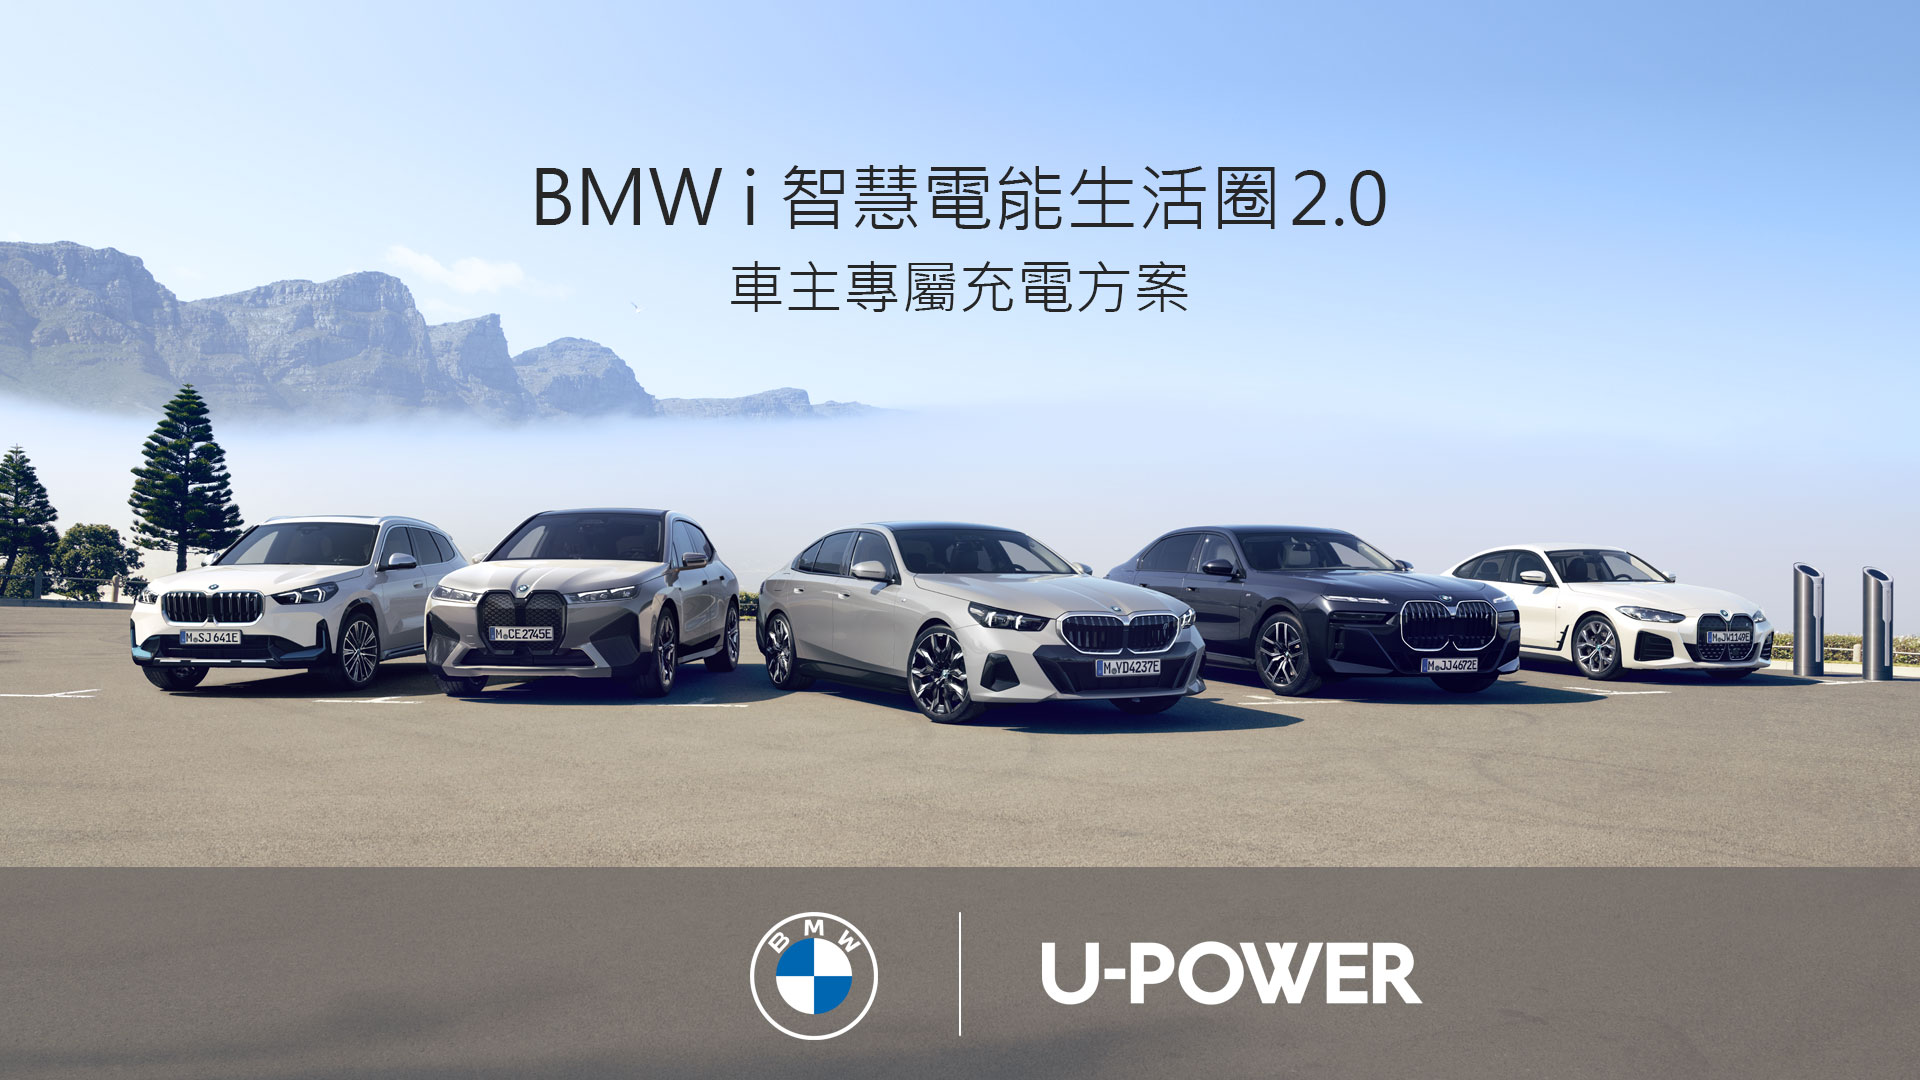 BMW純電車主尊享免費充電方案